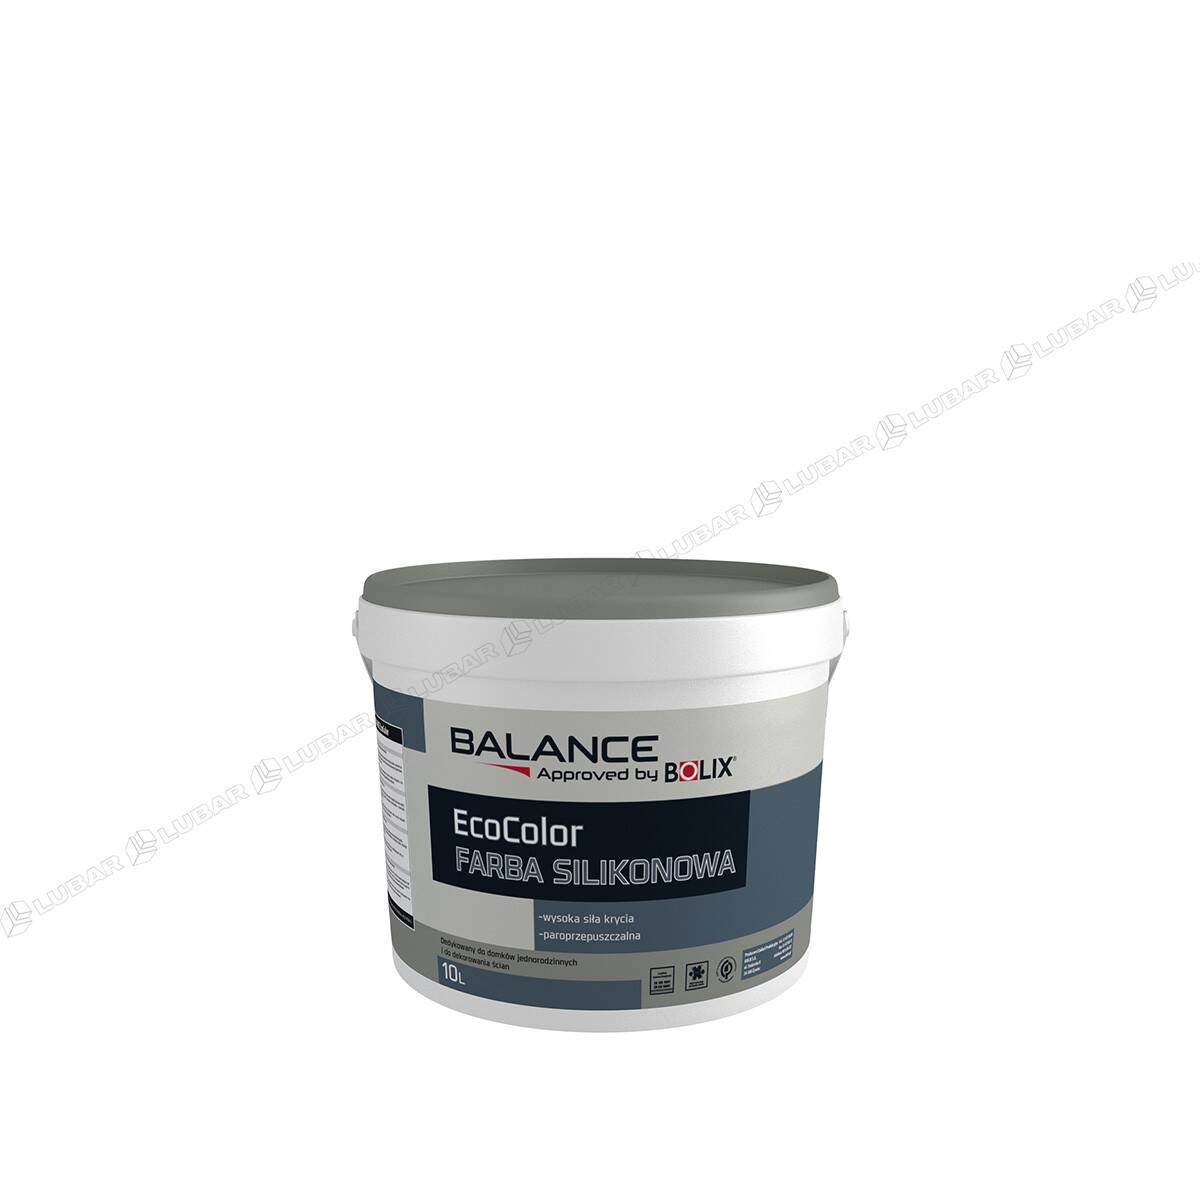 BOLIX Balance EcoColor Farba silikonowa 10l (Zdjęcie 1)